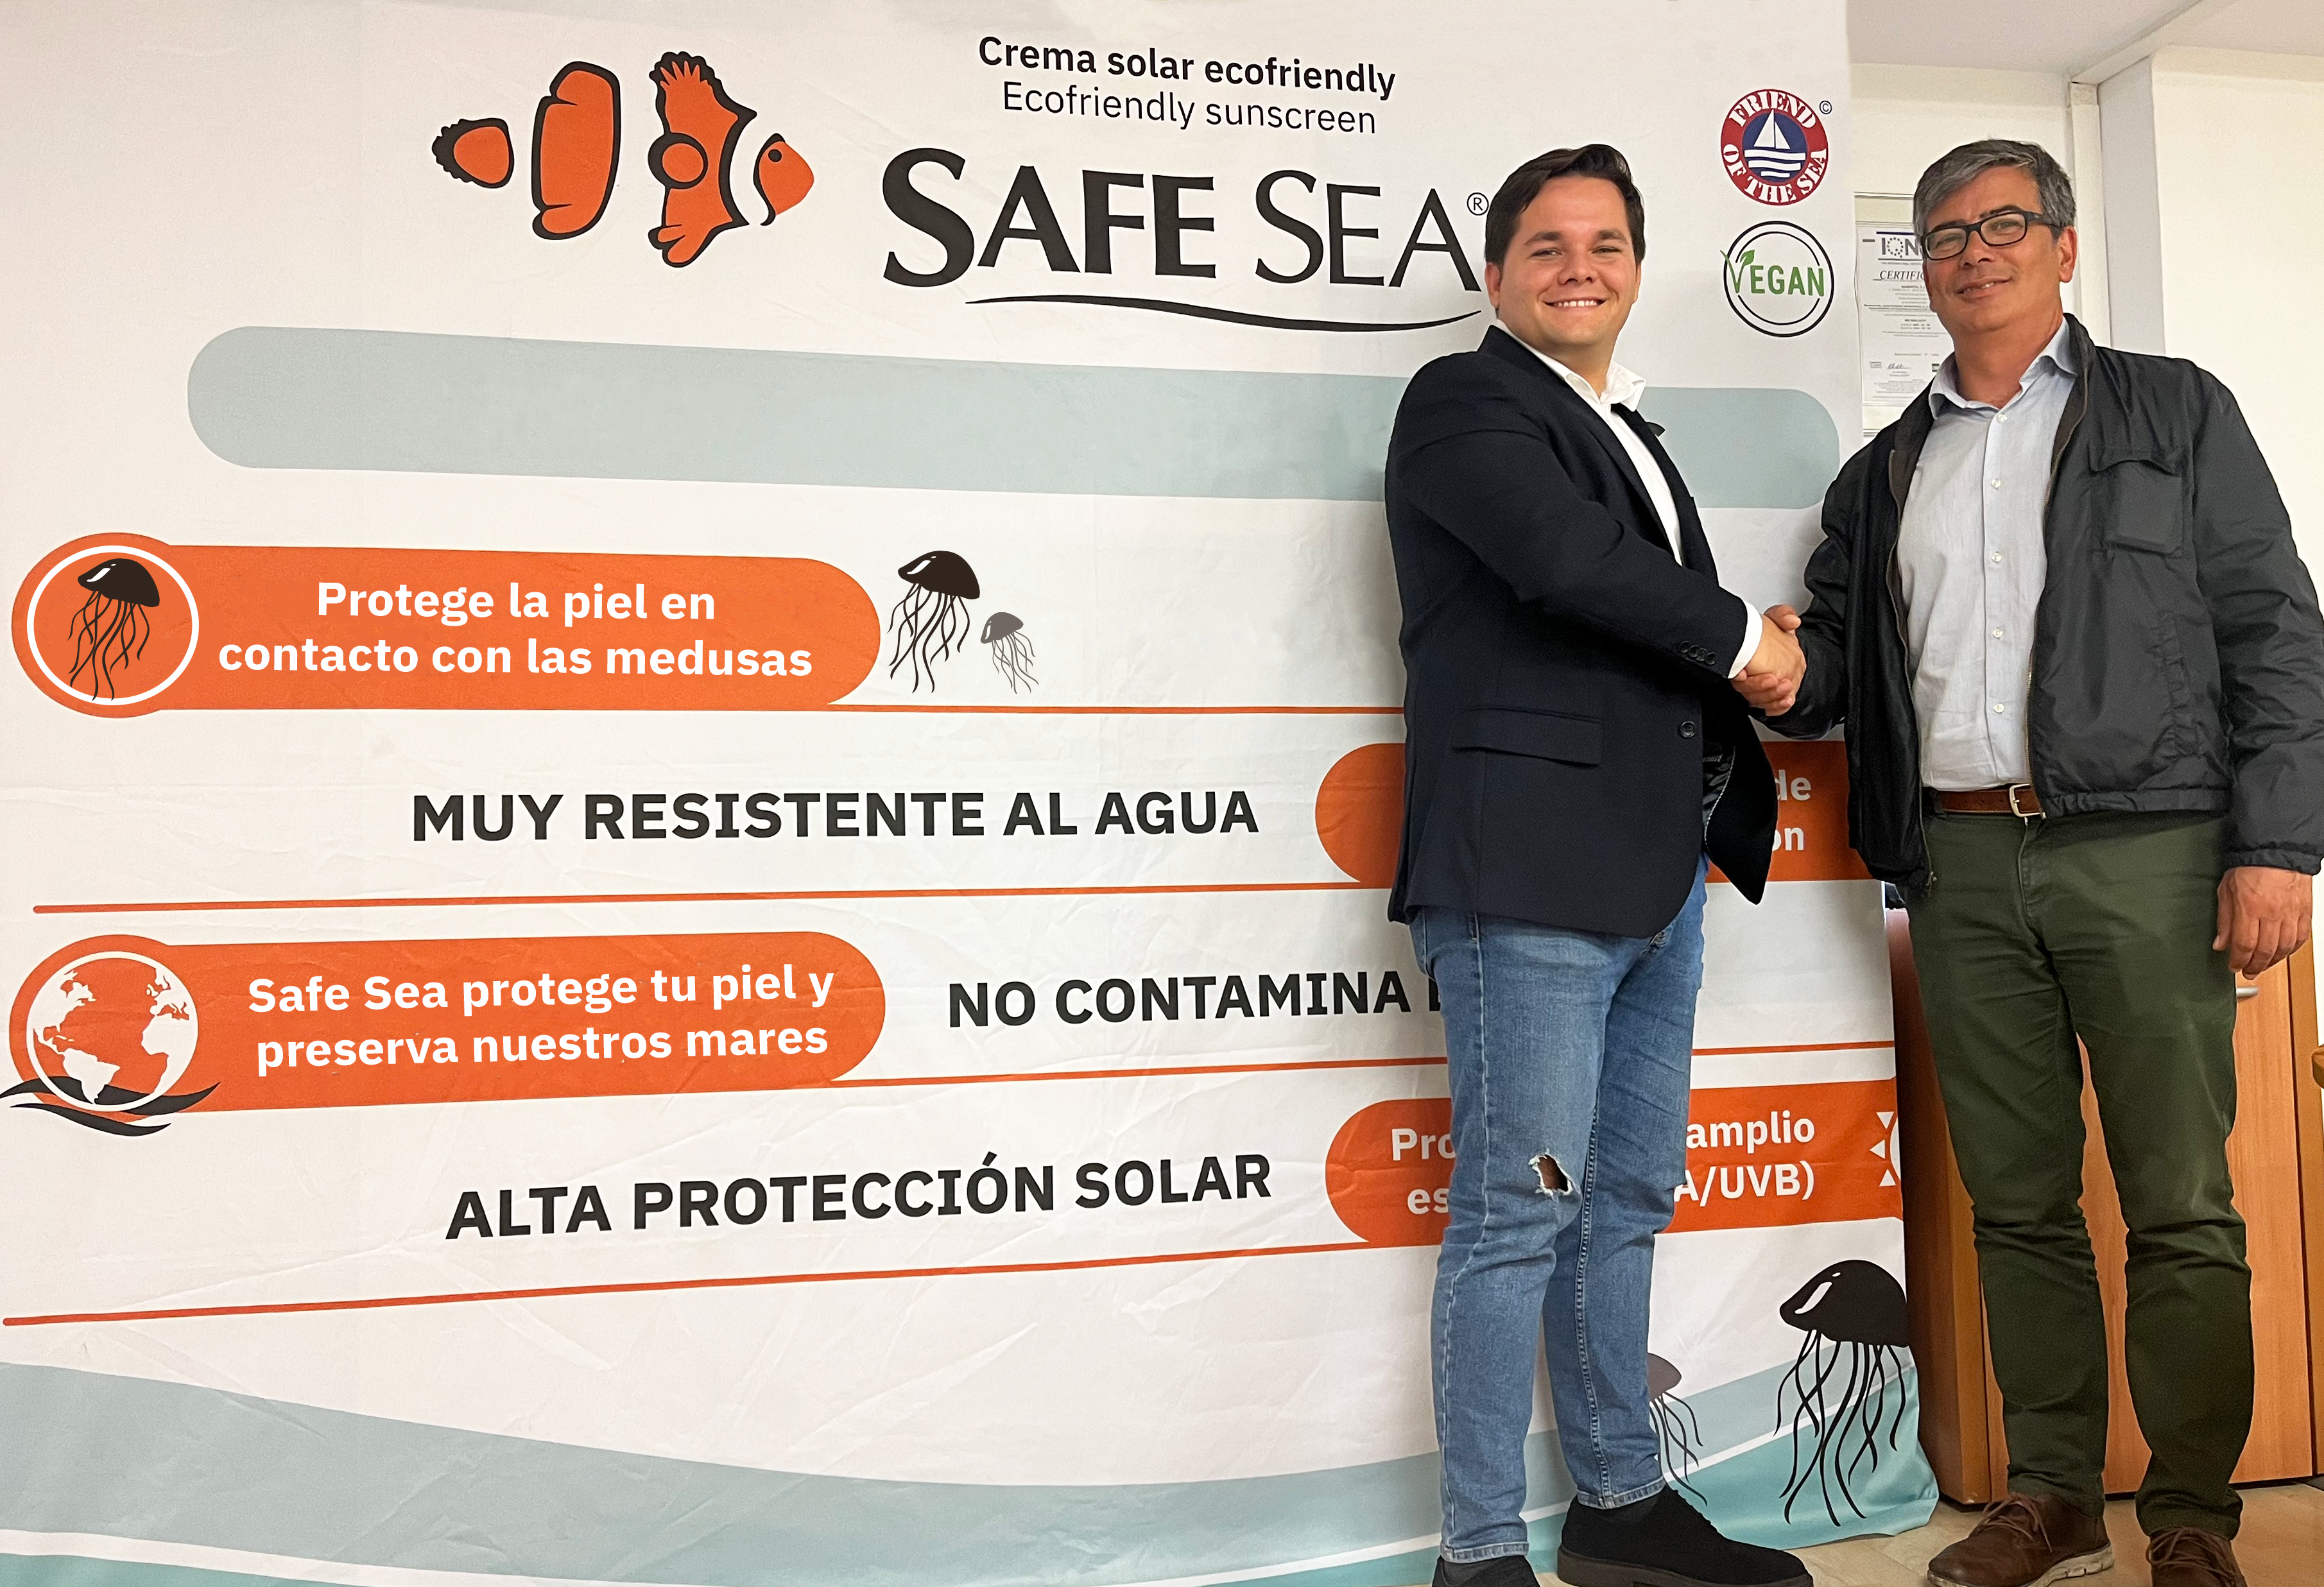 La Federación Española de Surfing cierra un acuerdo de colaboración con la empresa de cremas solares Safe Sea